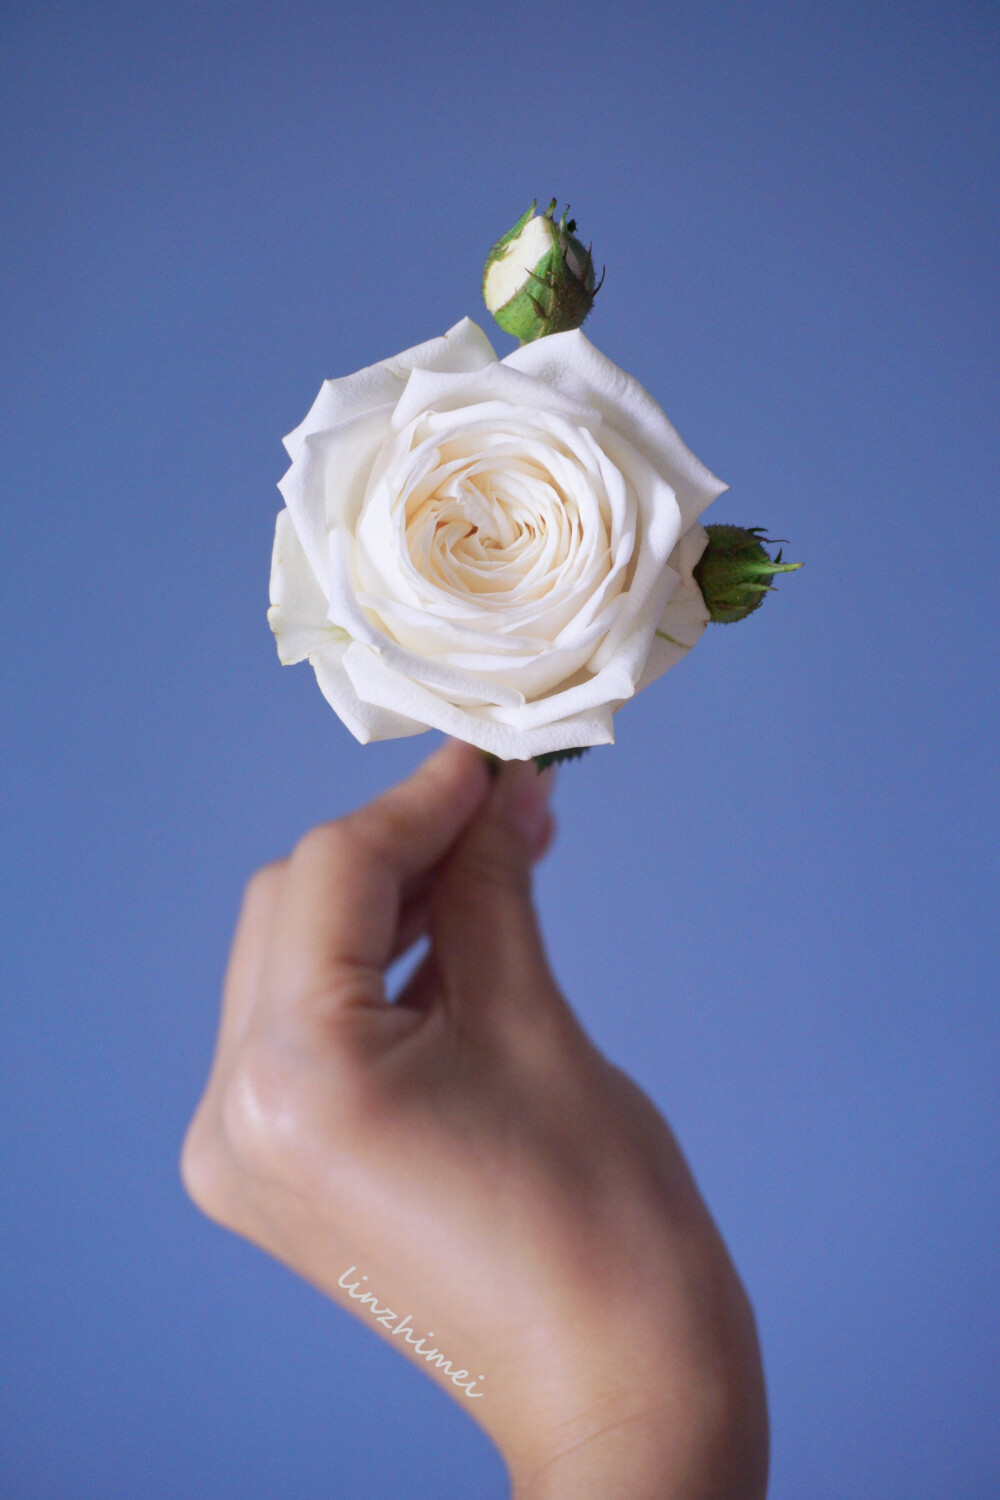 鲜切花小科普：snow ballet玫瑰
肯尼亚进口白色多头玫瑰，目前我所见到的白玫瑰（多头）中花型最为饱满的一个品种，品质极好，质感好到爆炸，第一次见差点误认为是奥斯汀。花瓣颜色非常温润，花瓣数量多，有时候会出现卷心花型，开放度中等，淡香，瓶插期6天左右。起初一直想不明白为何她叫snow ballet，后来细细看才发觉她不是像芭蕾，而是和天鹅有着相同的感觉，古典，洁白，高贵，美得香油画。而芭蕾跳的可不就是天鹅么。